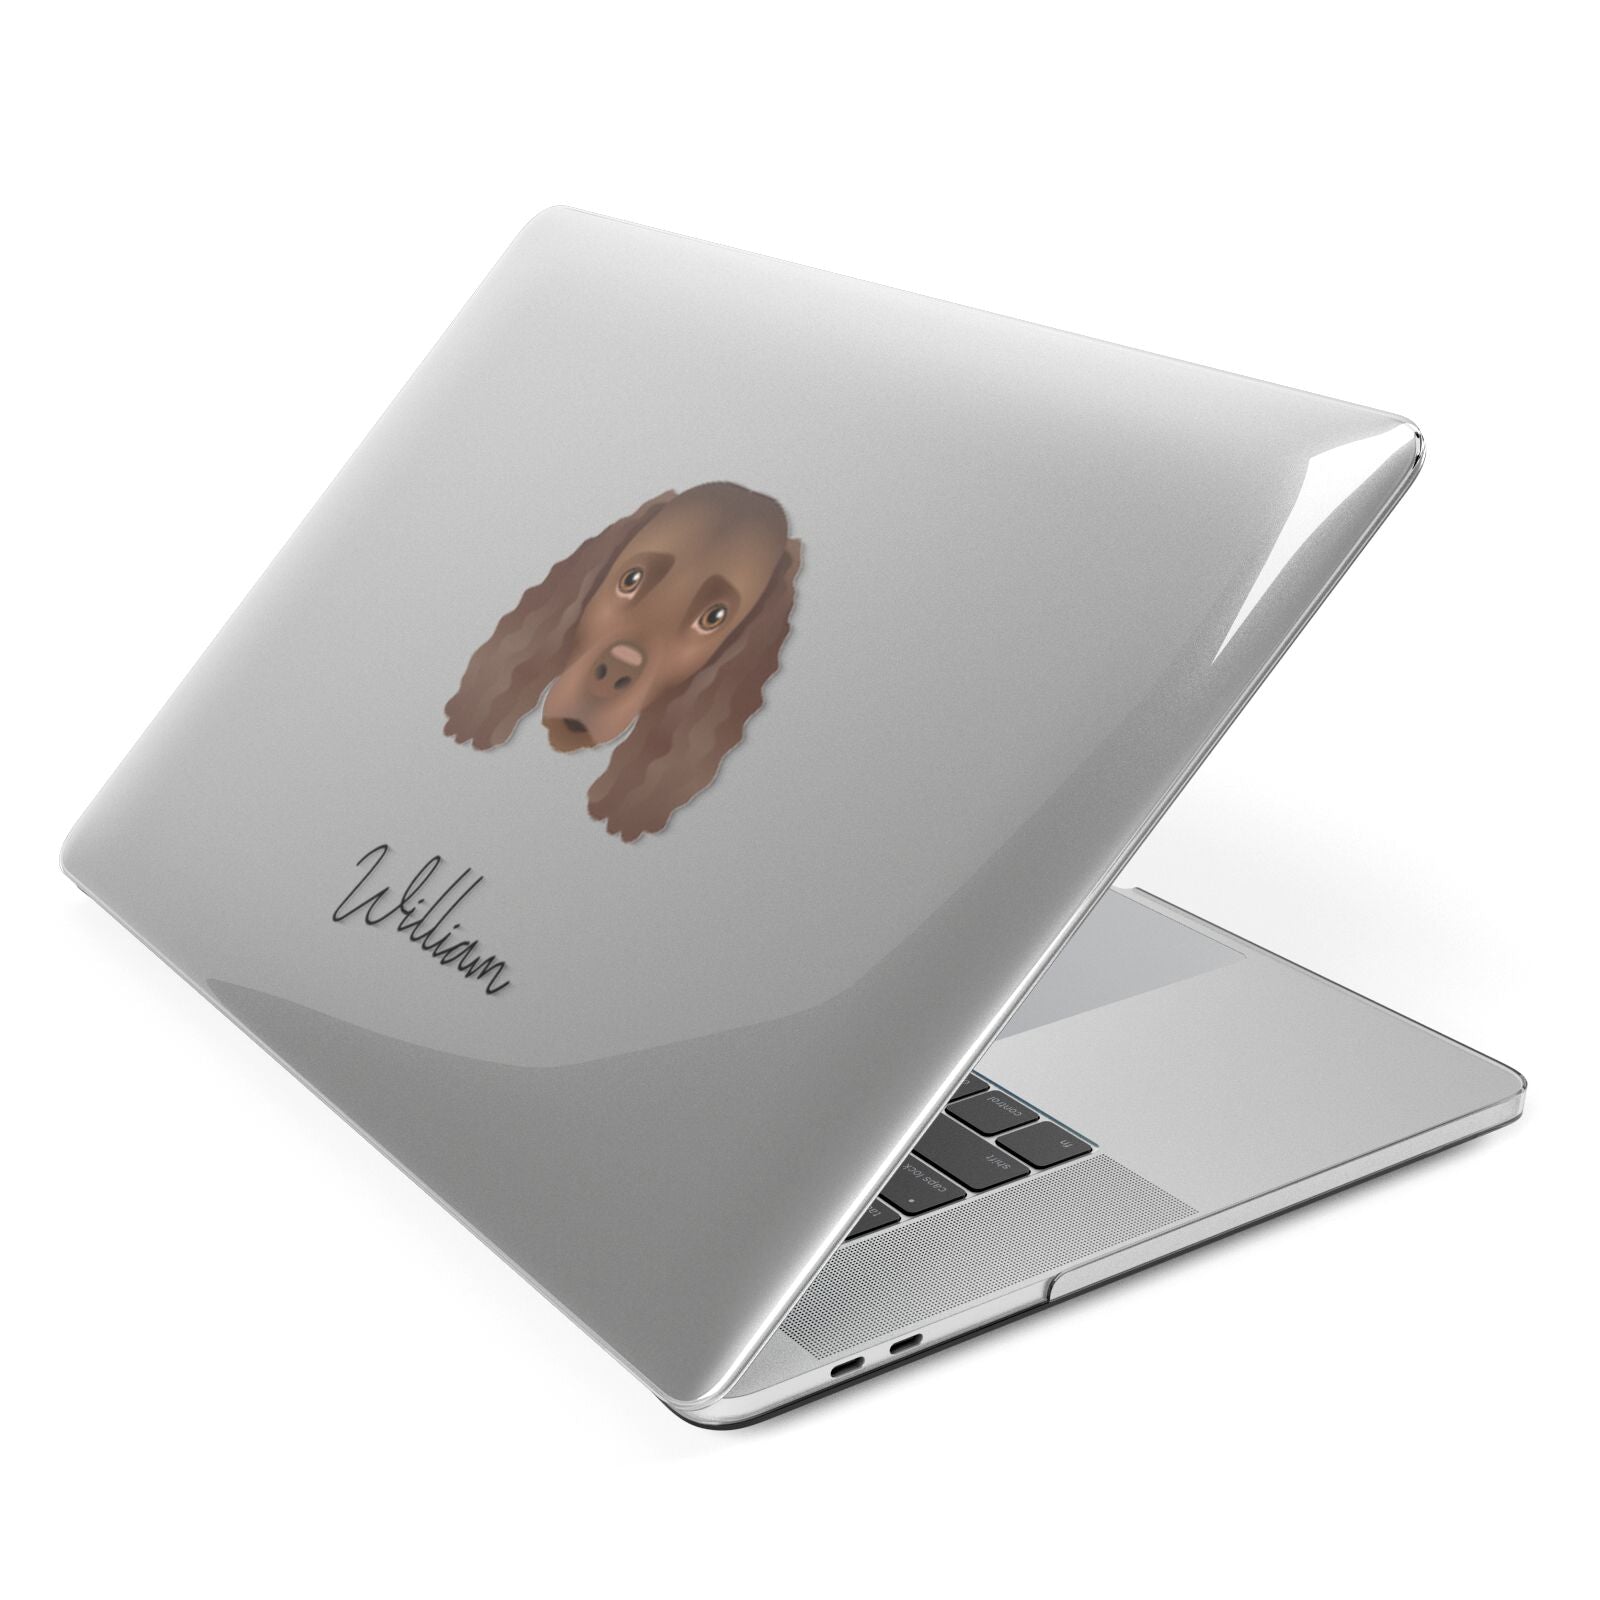 American Water Spaniel Personalised Apple MacBook Case Side View